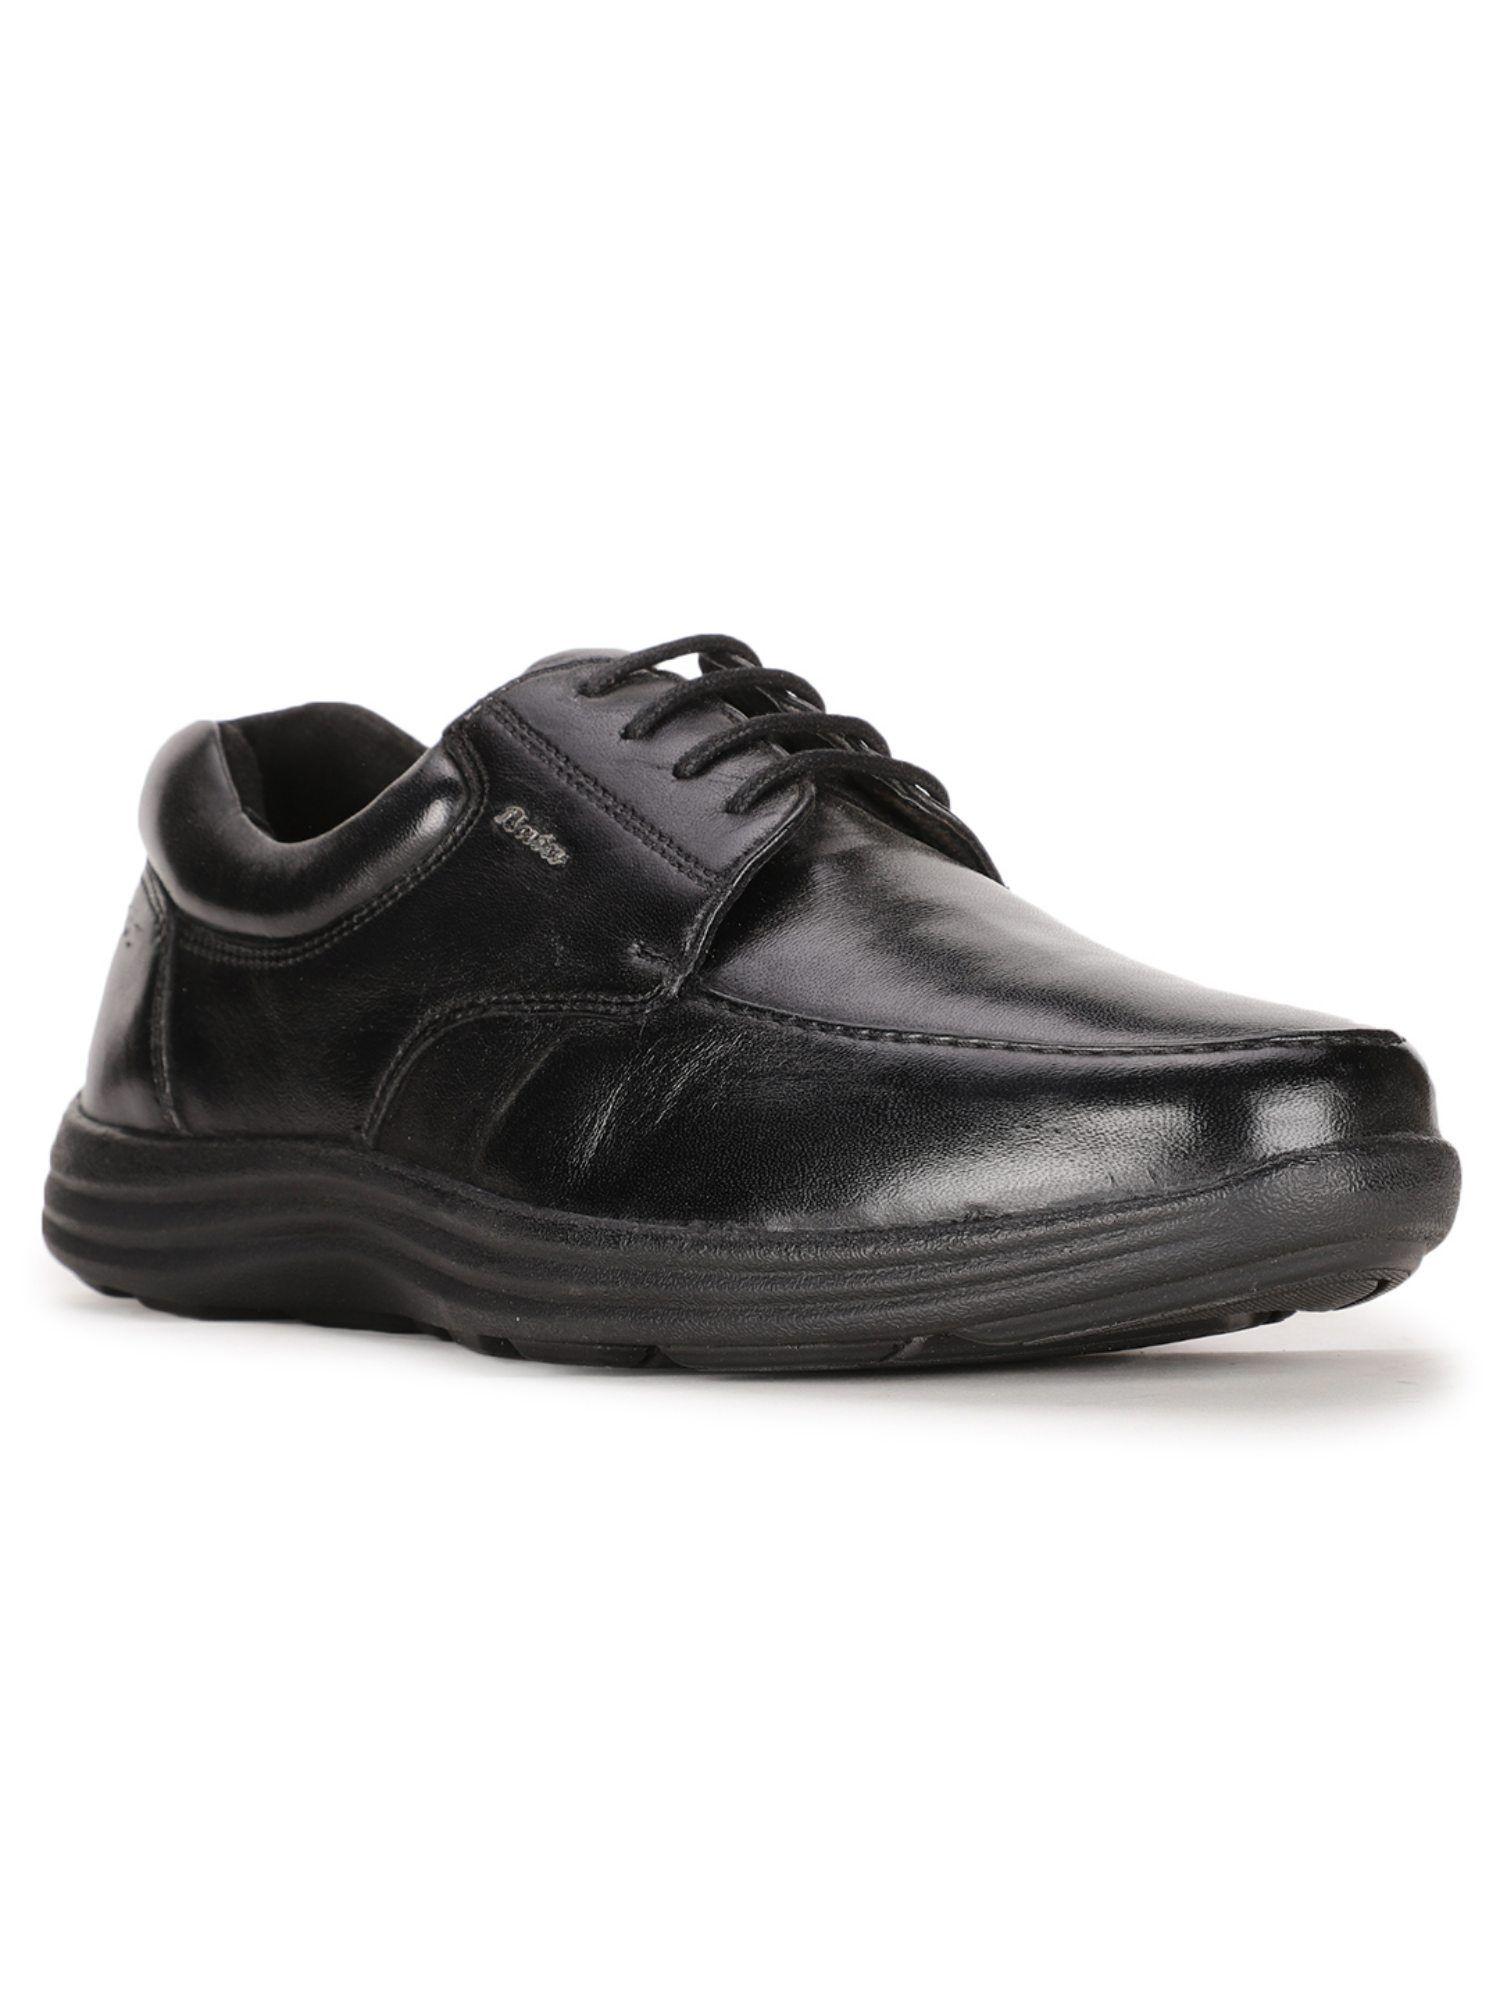 solid-black-formal-derby-shoes